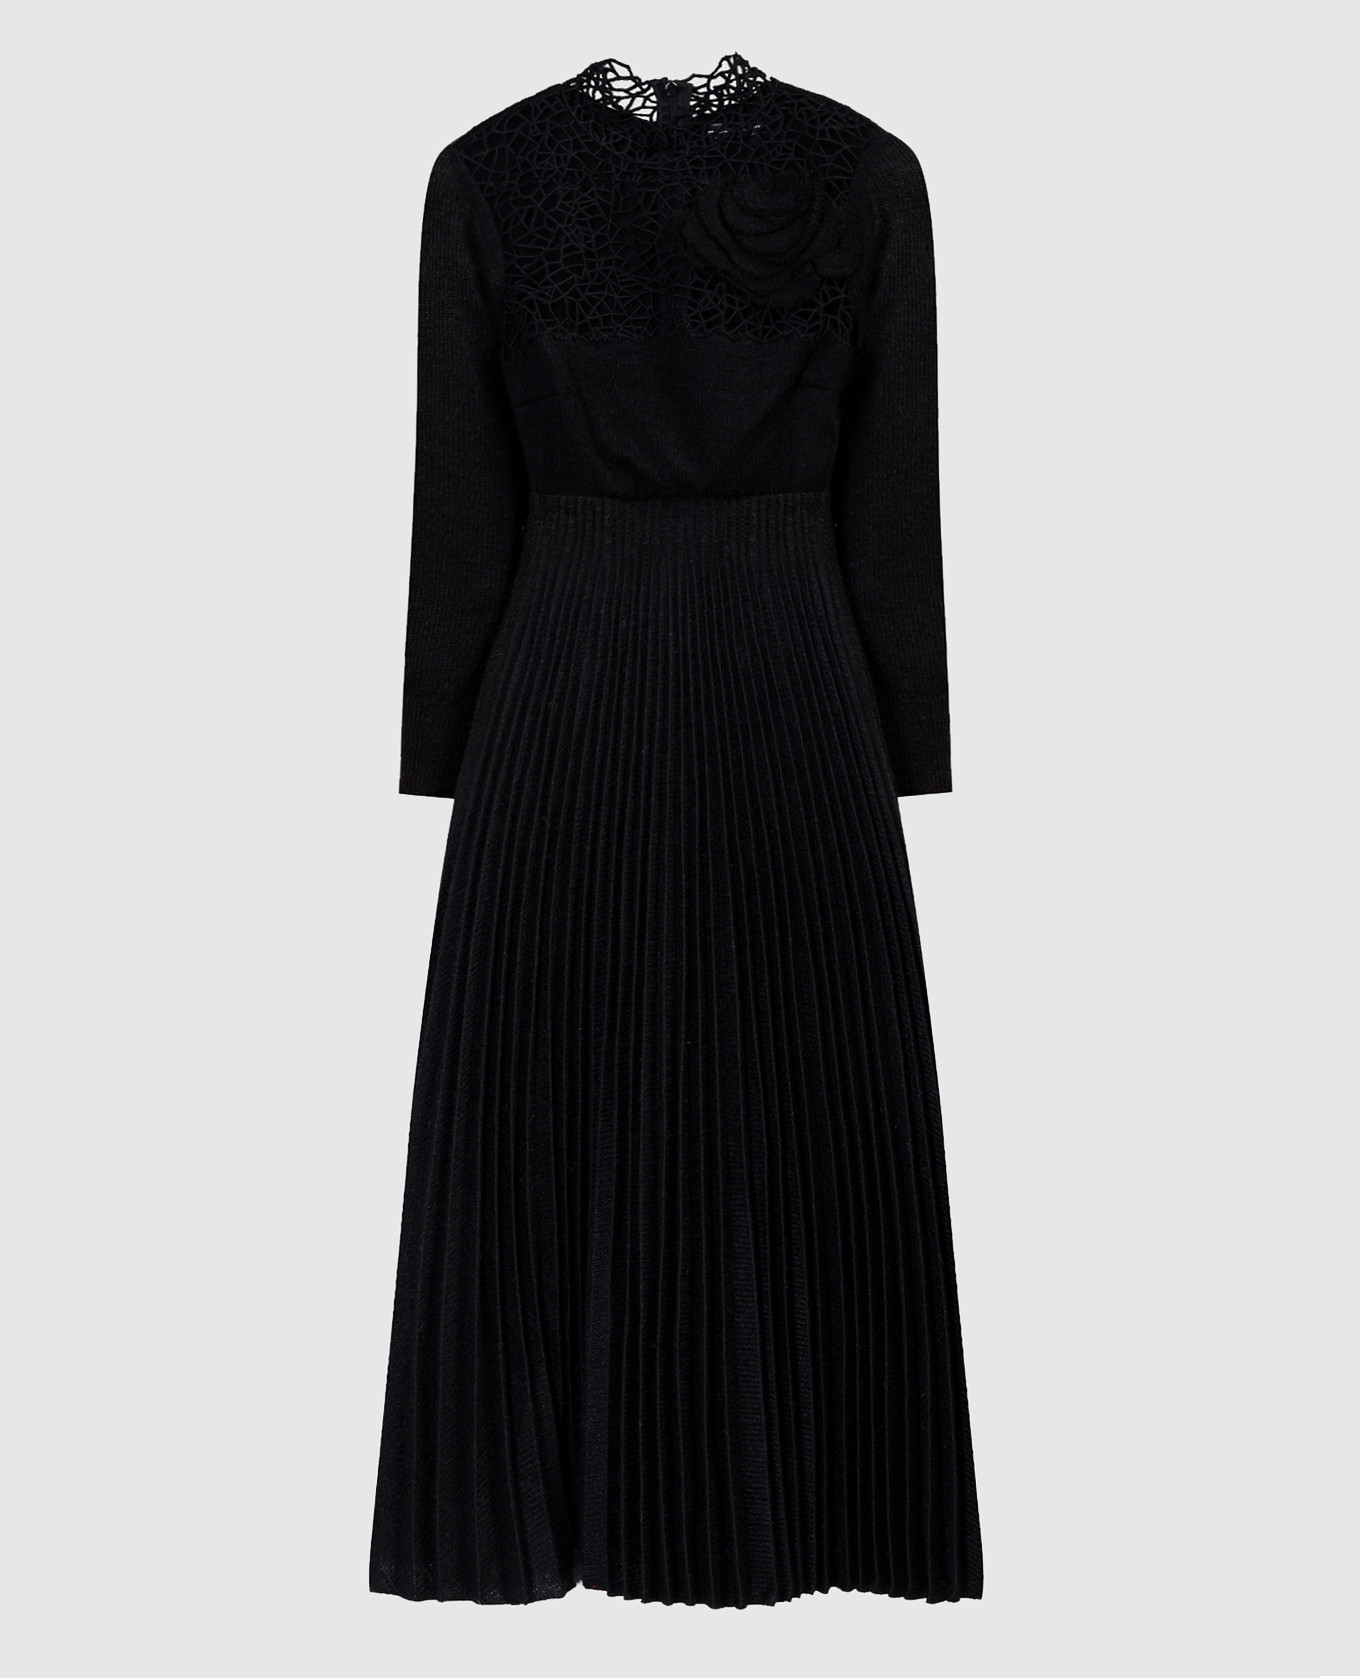 Black pleated dress